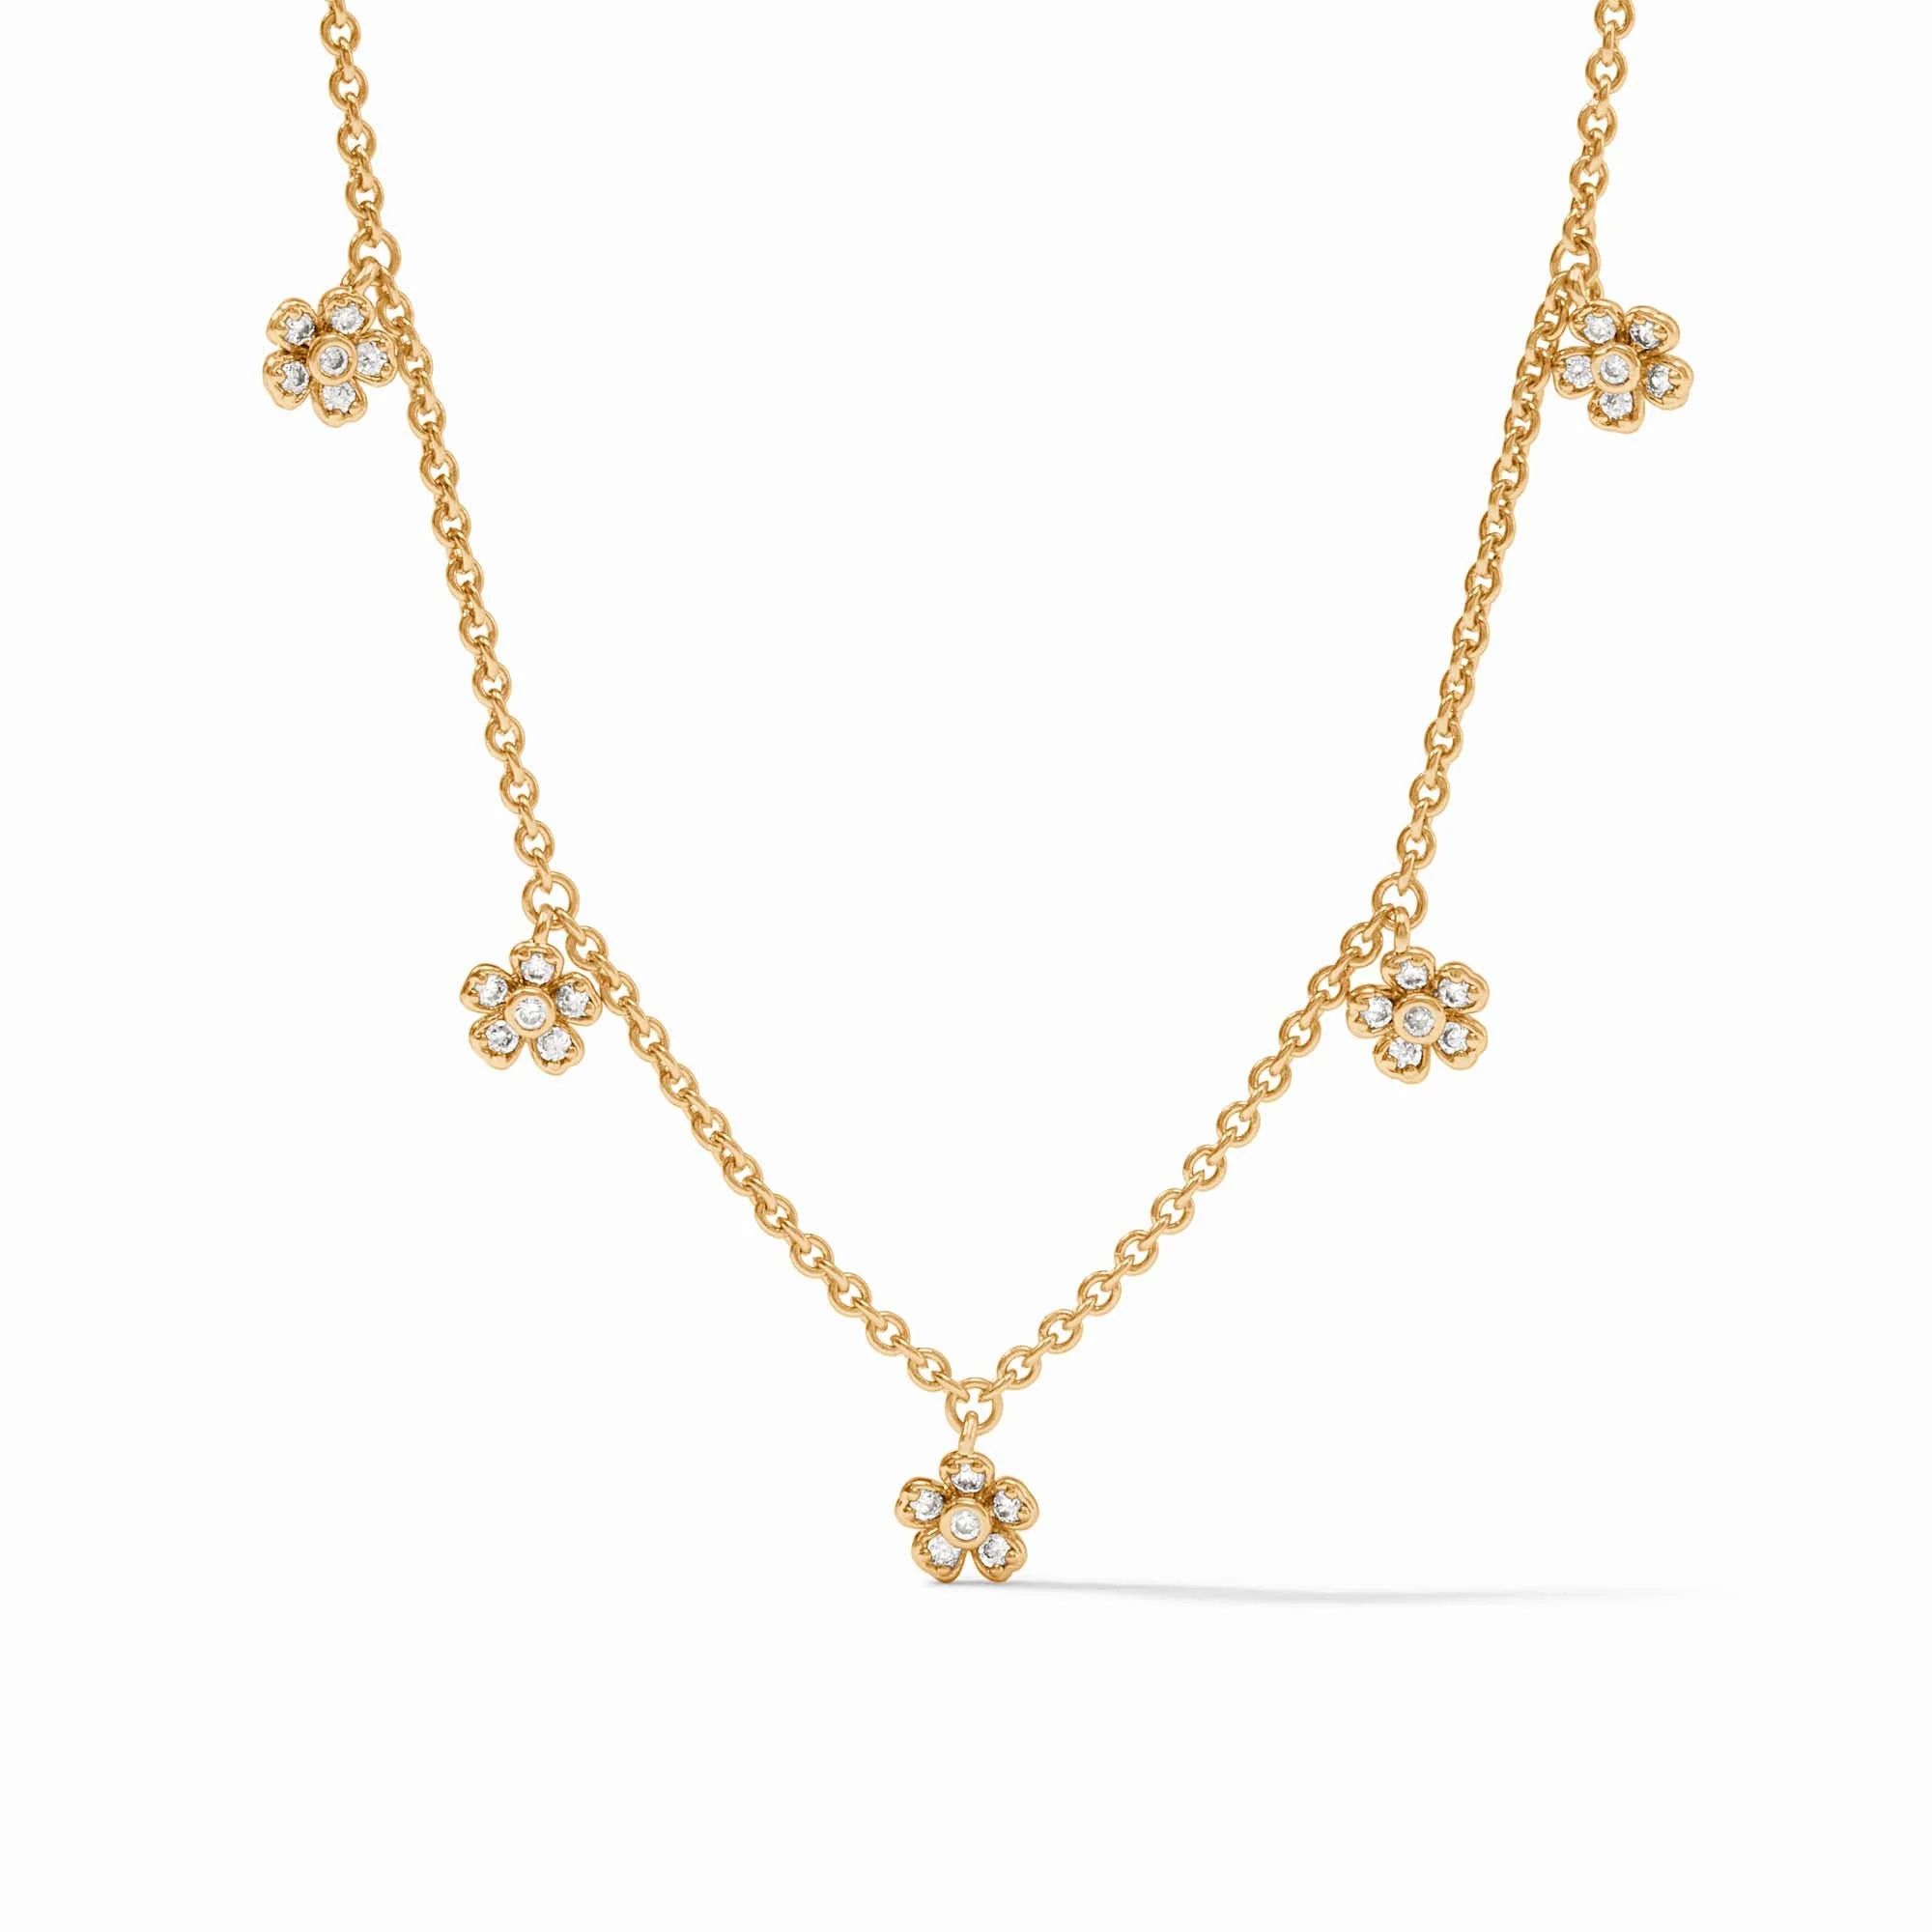 Laurel Delicate Charm Necklace | Julie Vos